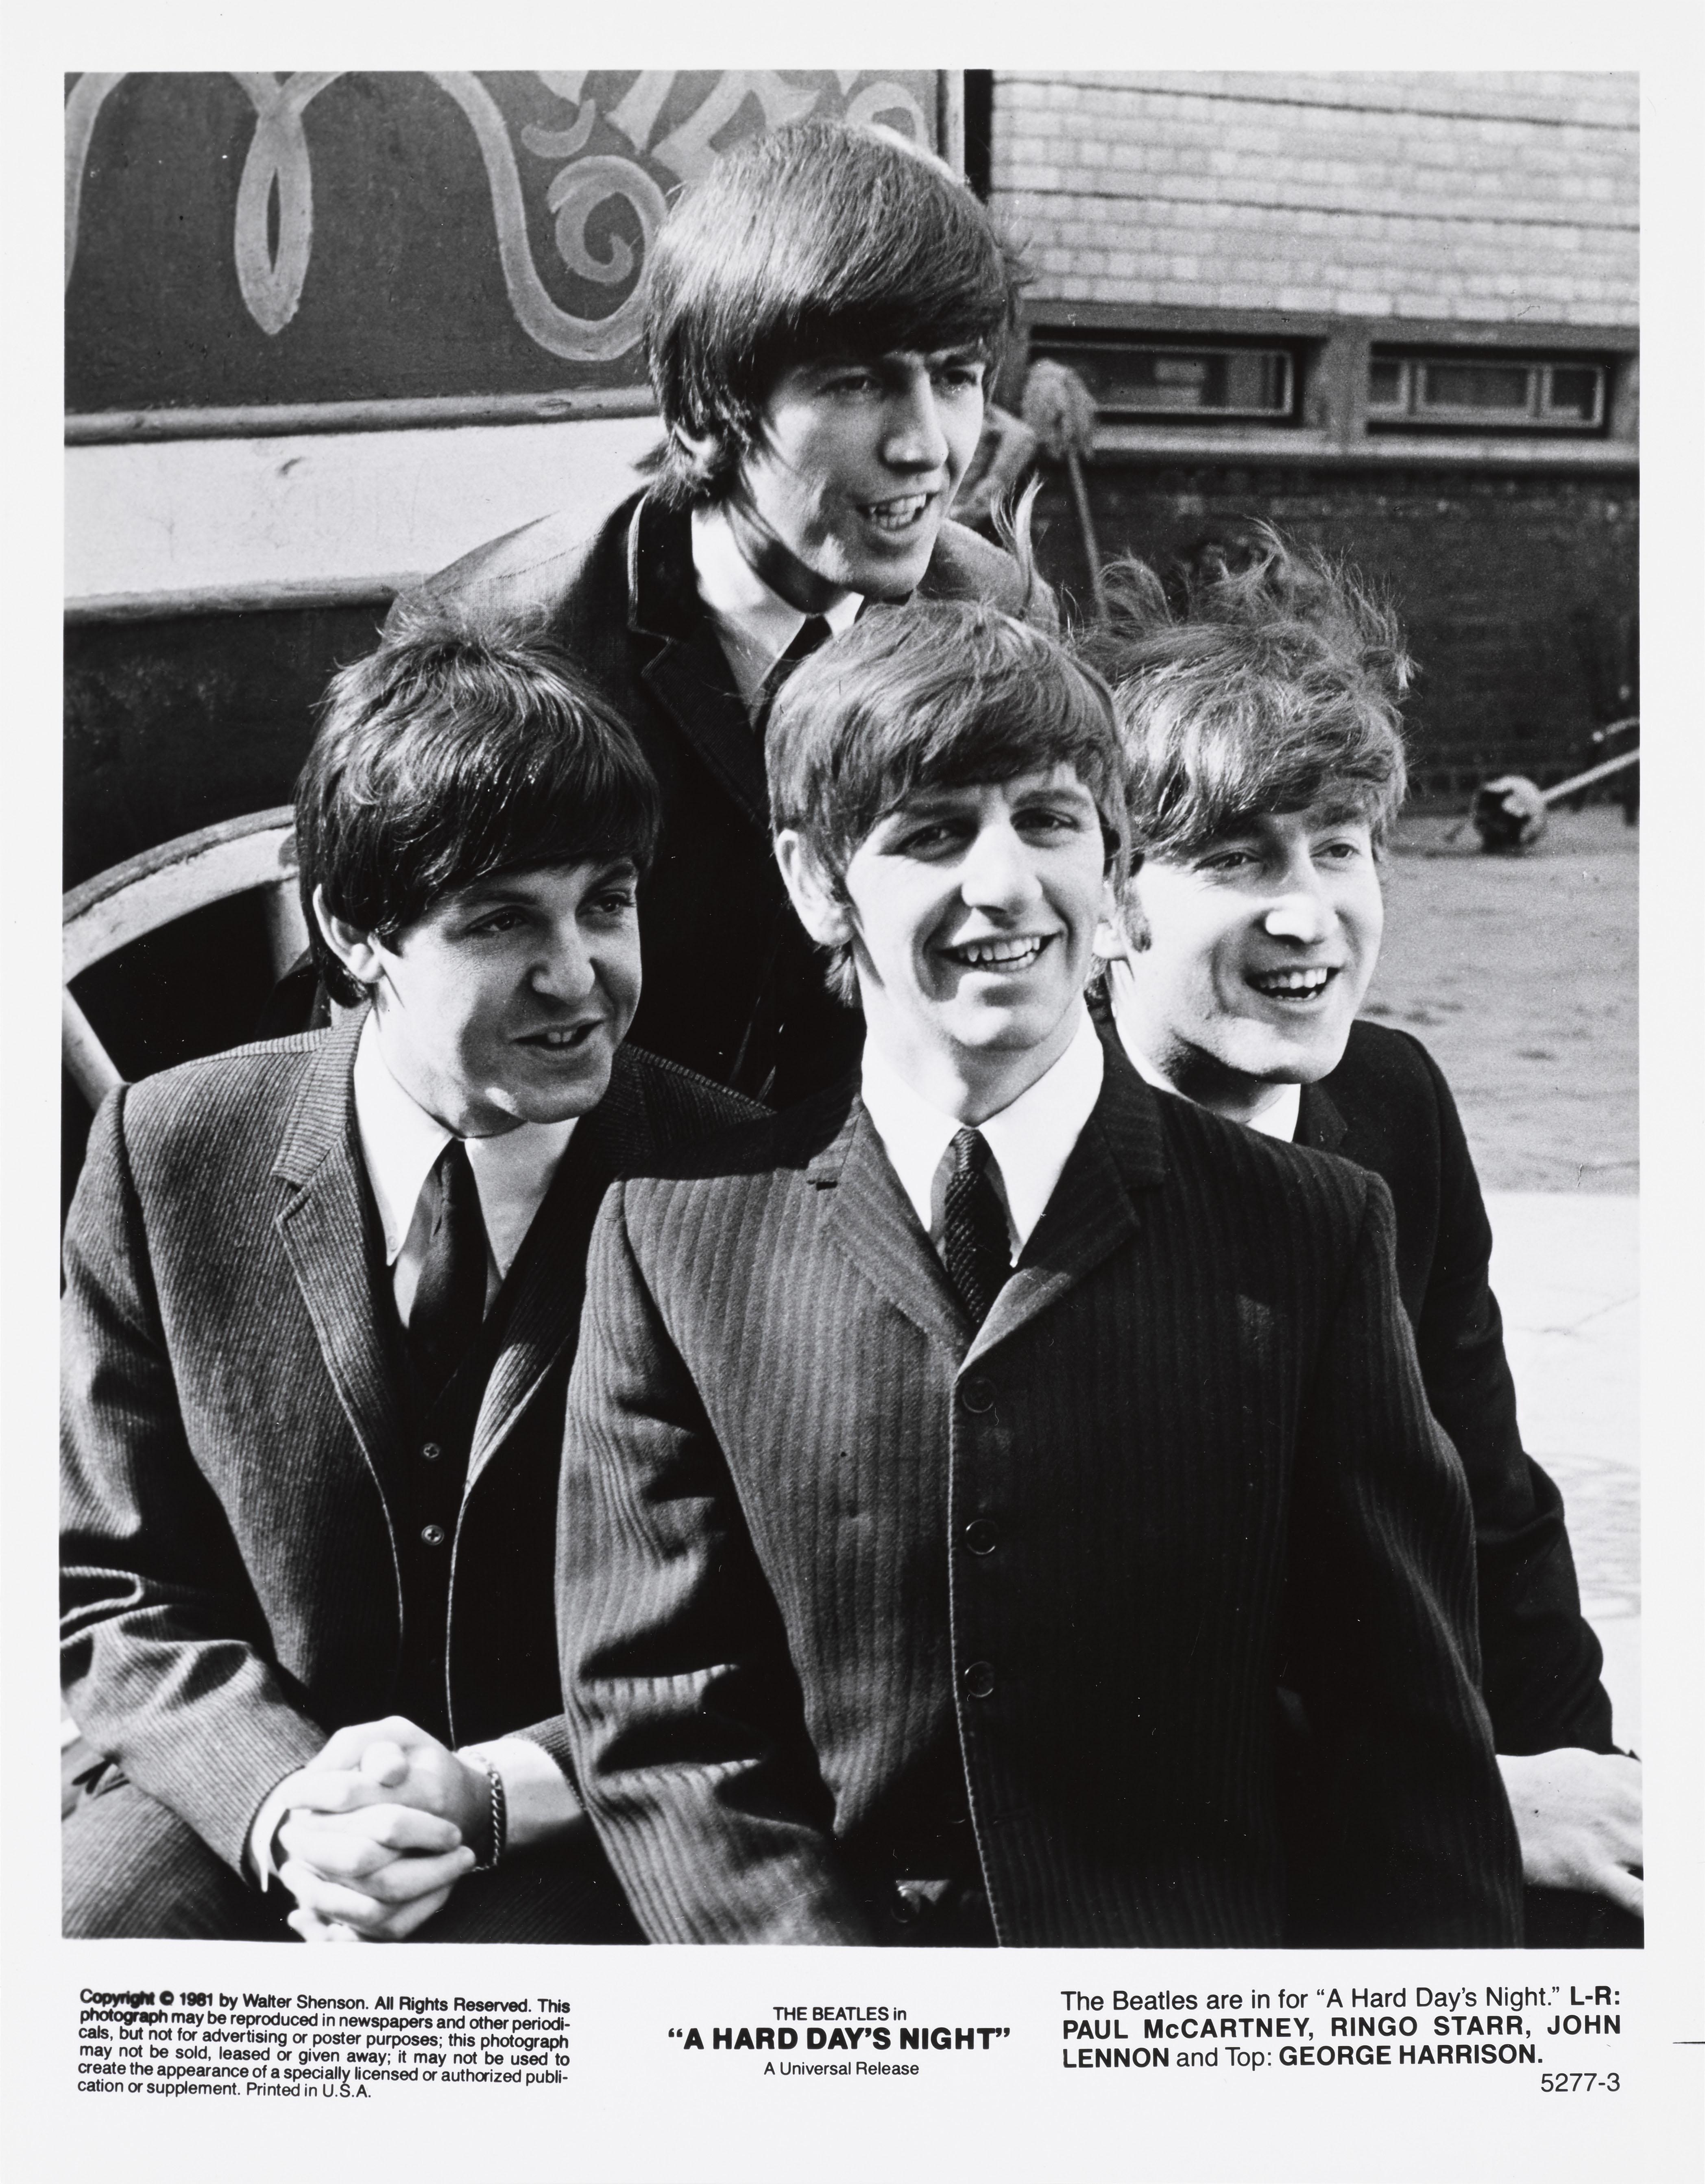 Original US-Produktionsfotos für den Musik- und Komödienfilm A Hard Day's Night der Beatles von 1964. Bei dem Film führte Richard Lester Regie. Der Film wurde ein Jahr später, 1965, in der Tschechoslowakei veröffentlicht. 
Dieses Werk ist mit